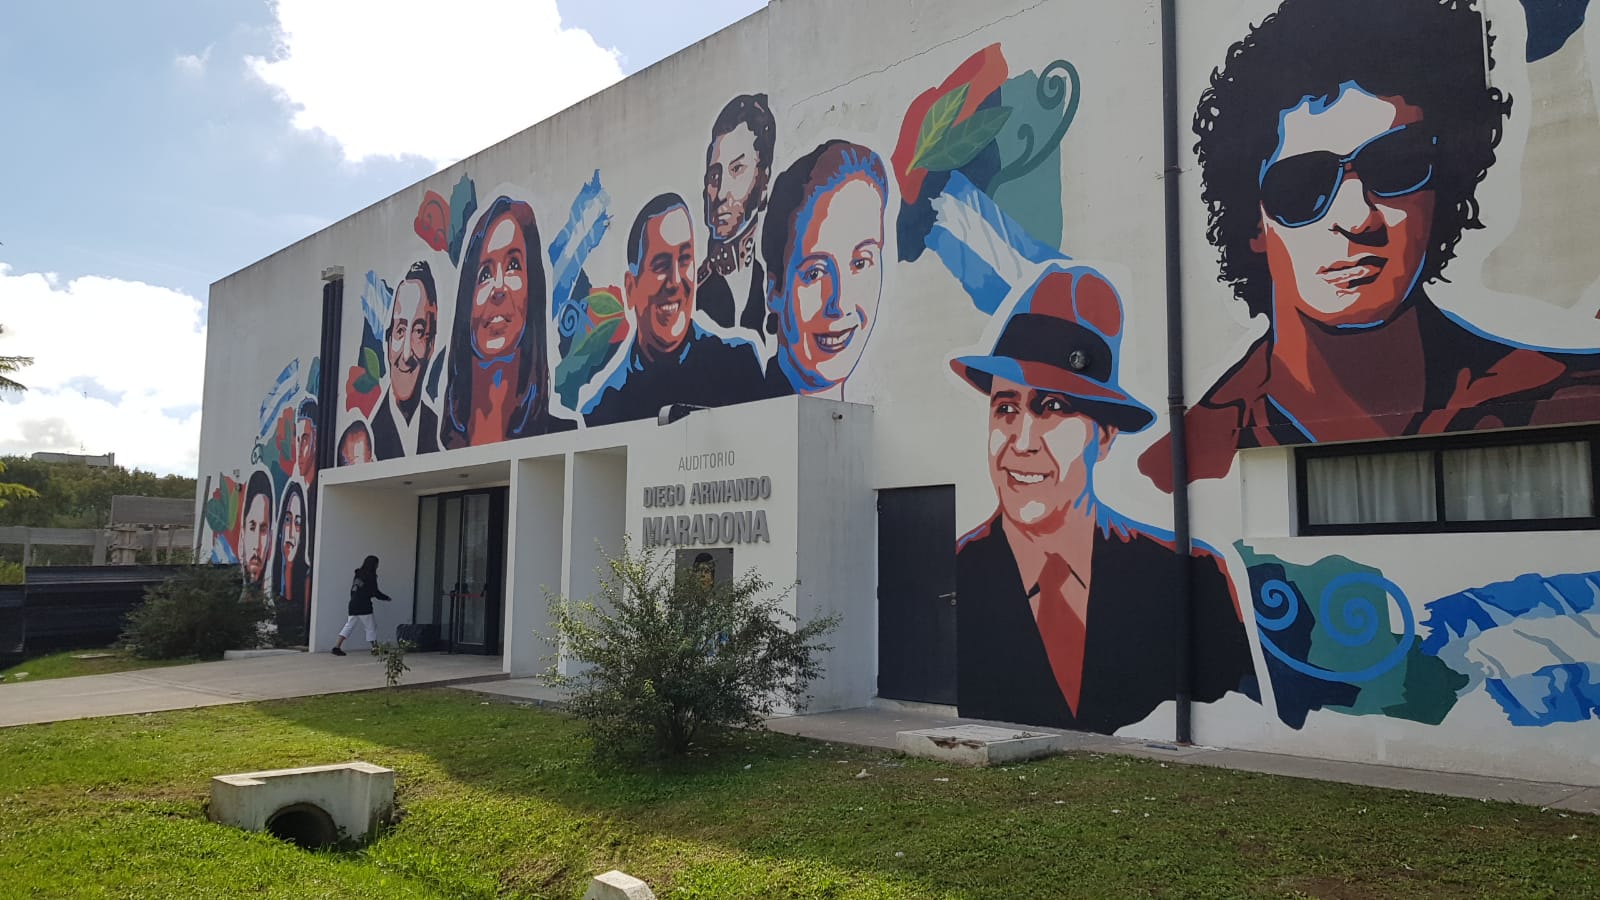 La Facultad de Periodismo inauguró un mural y generó polémica